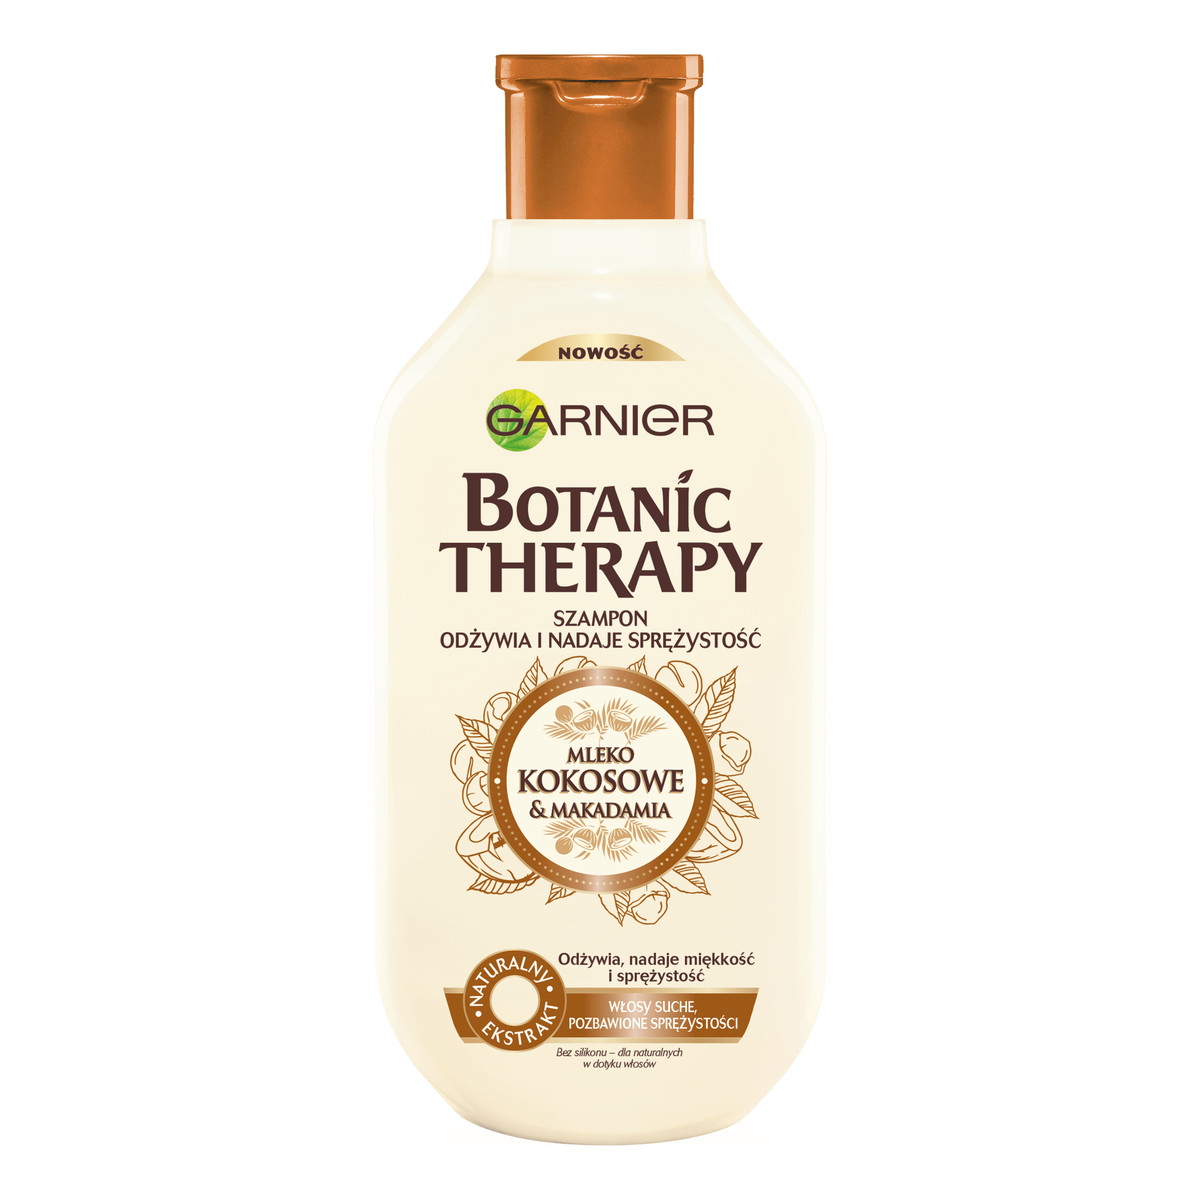 Garnier Botanic Therapy Mleko kokosowe & Makadamia szampon do włosów suchych szorstkich i pozbawionych sprężystości 400ml